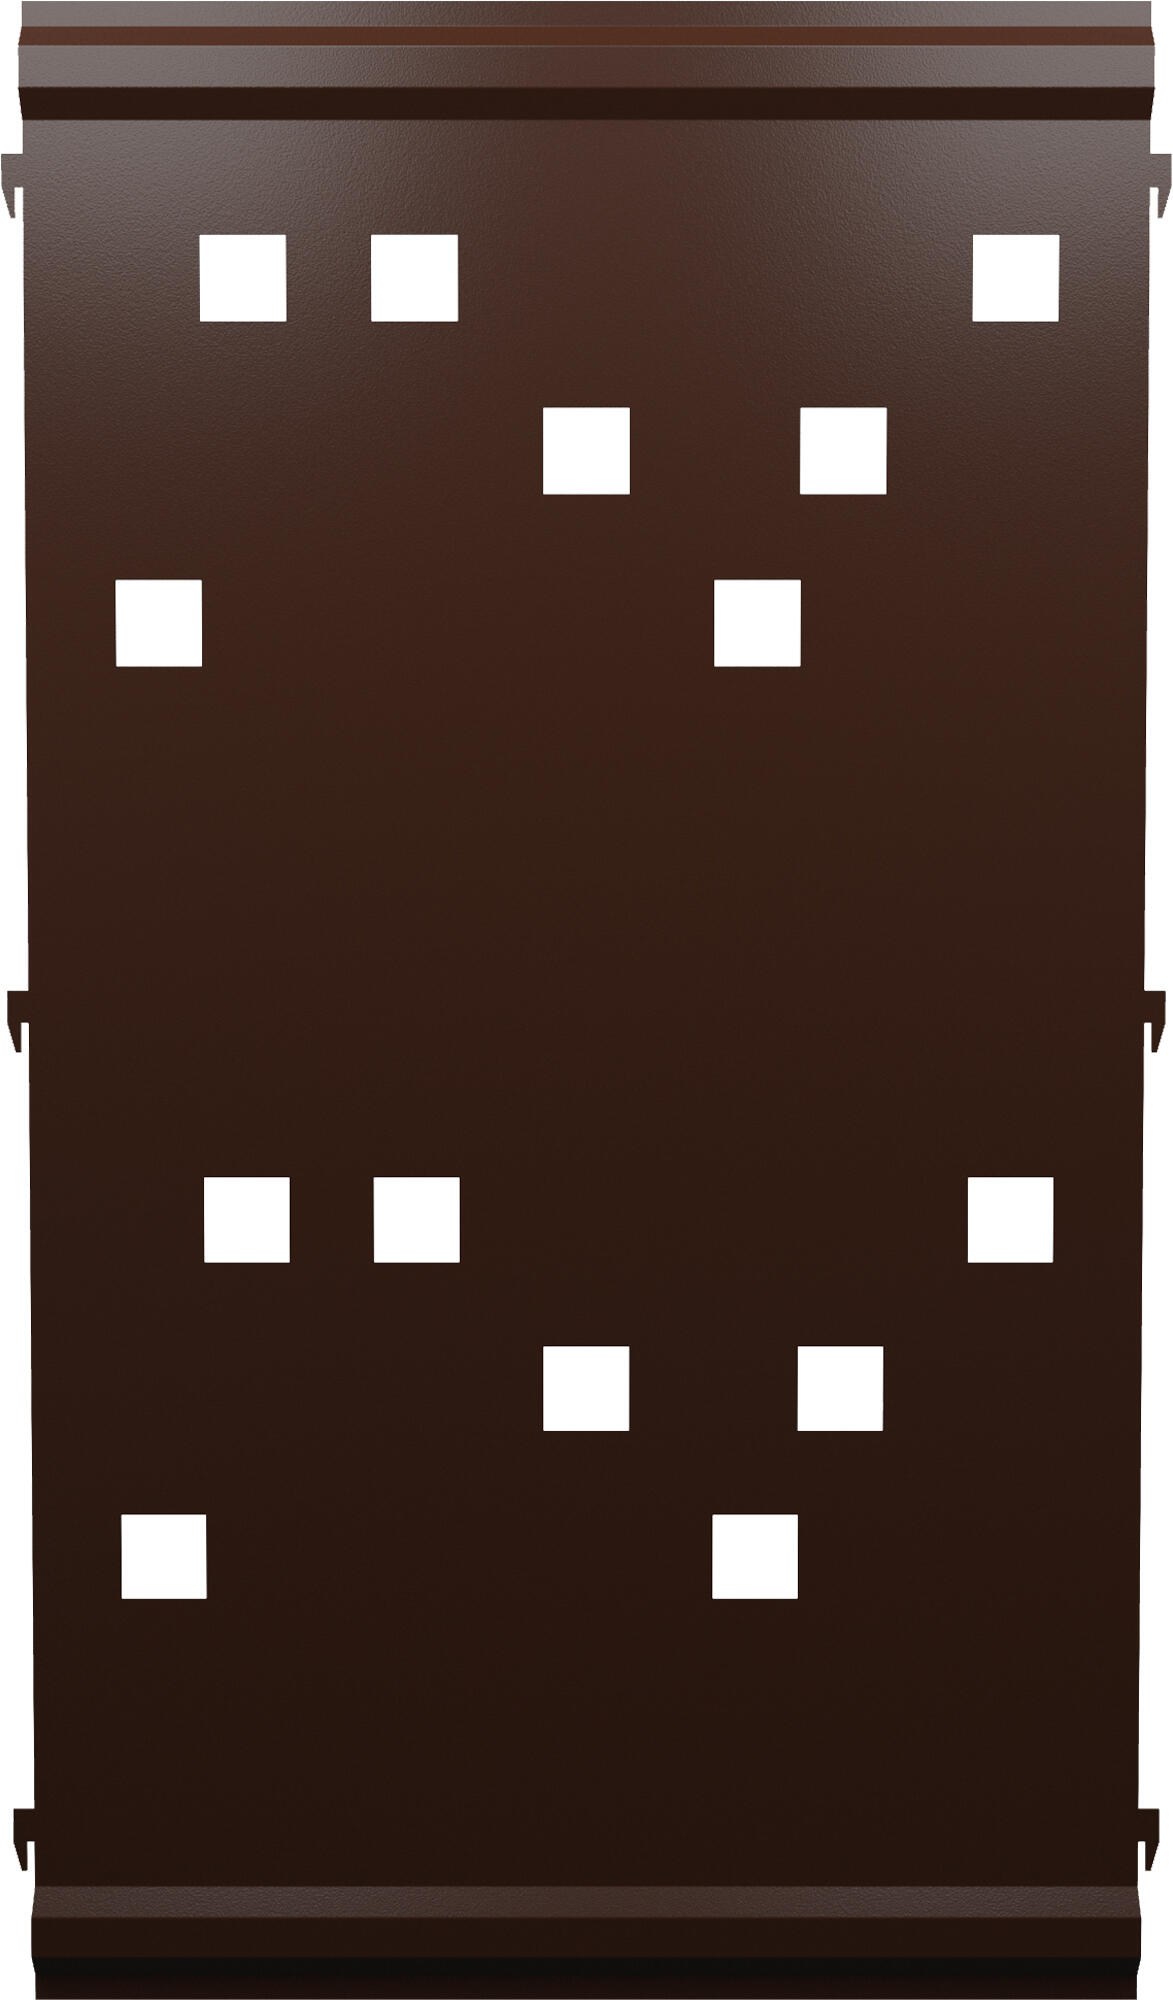 Panel remate valla acero galvanizado franja cuadros marrón franja 94x52,5 cm